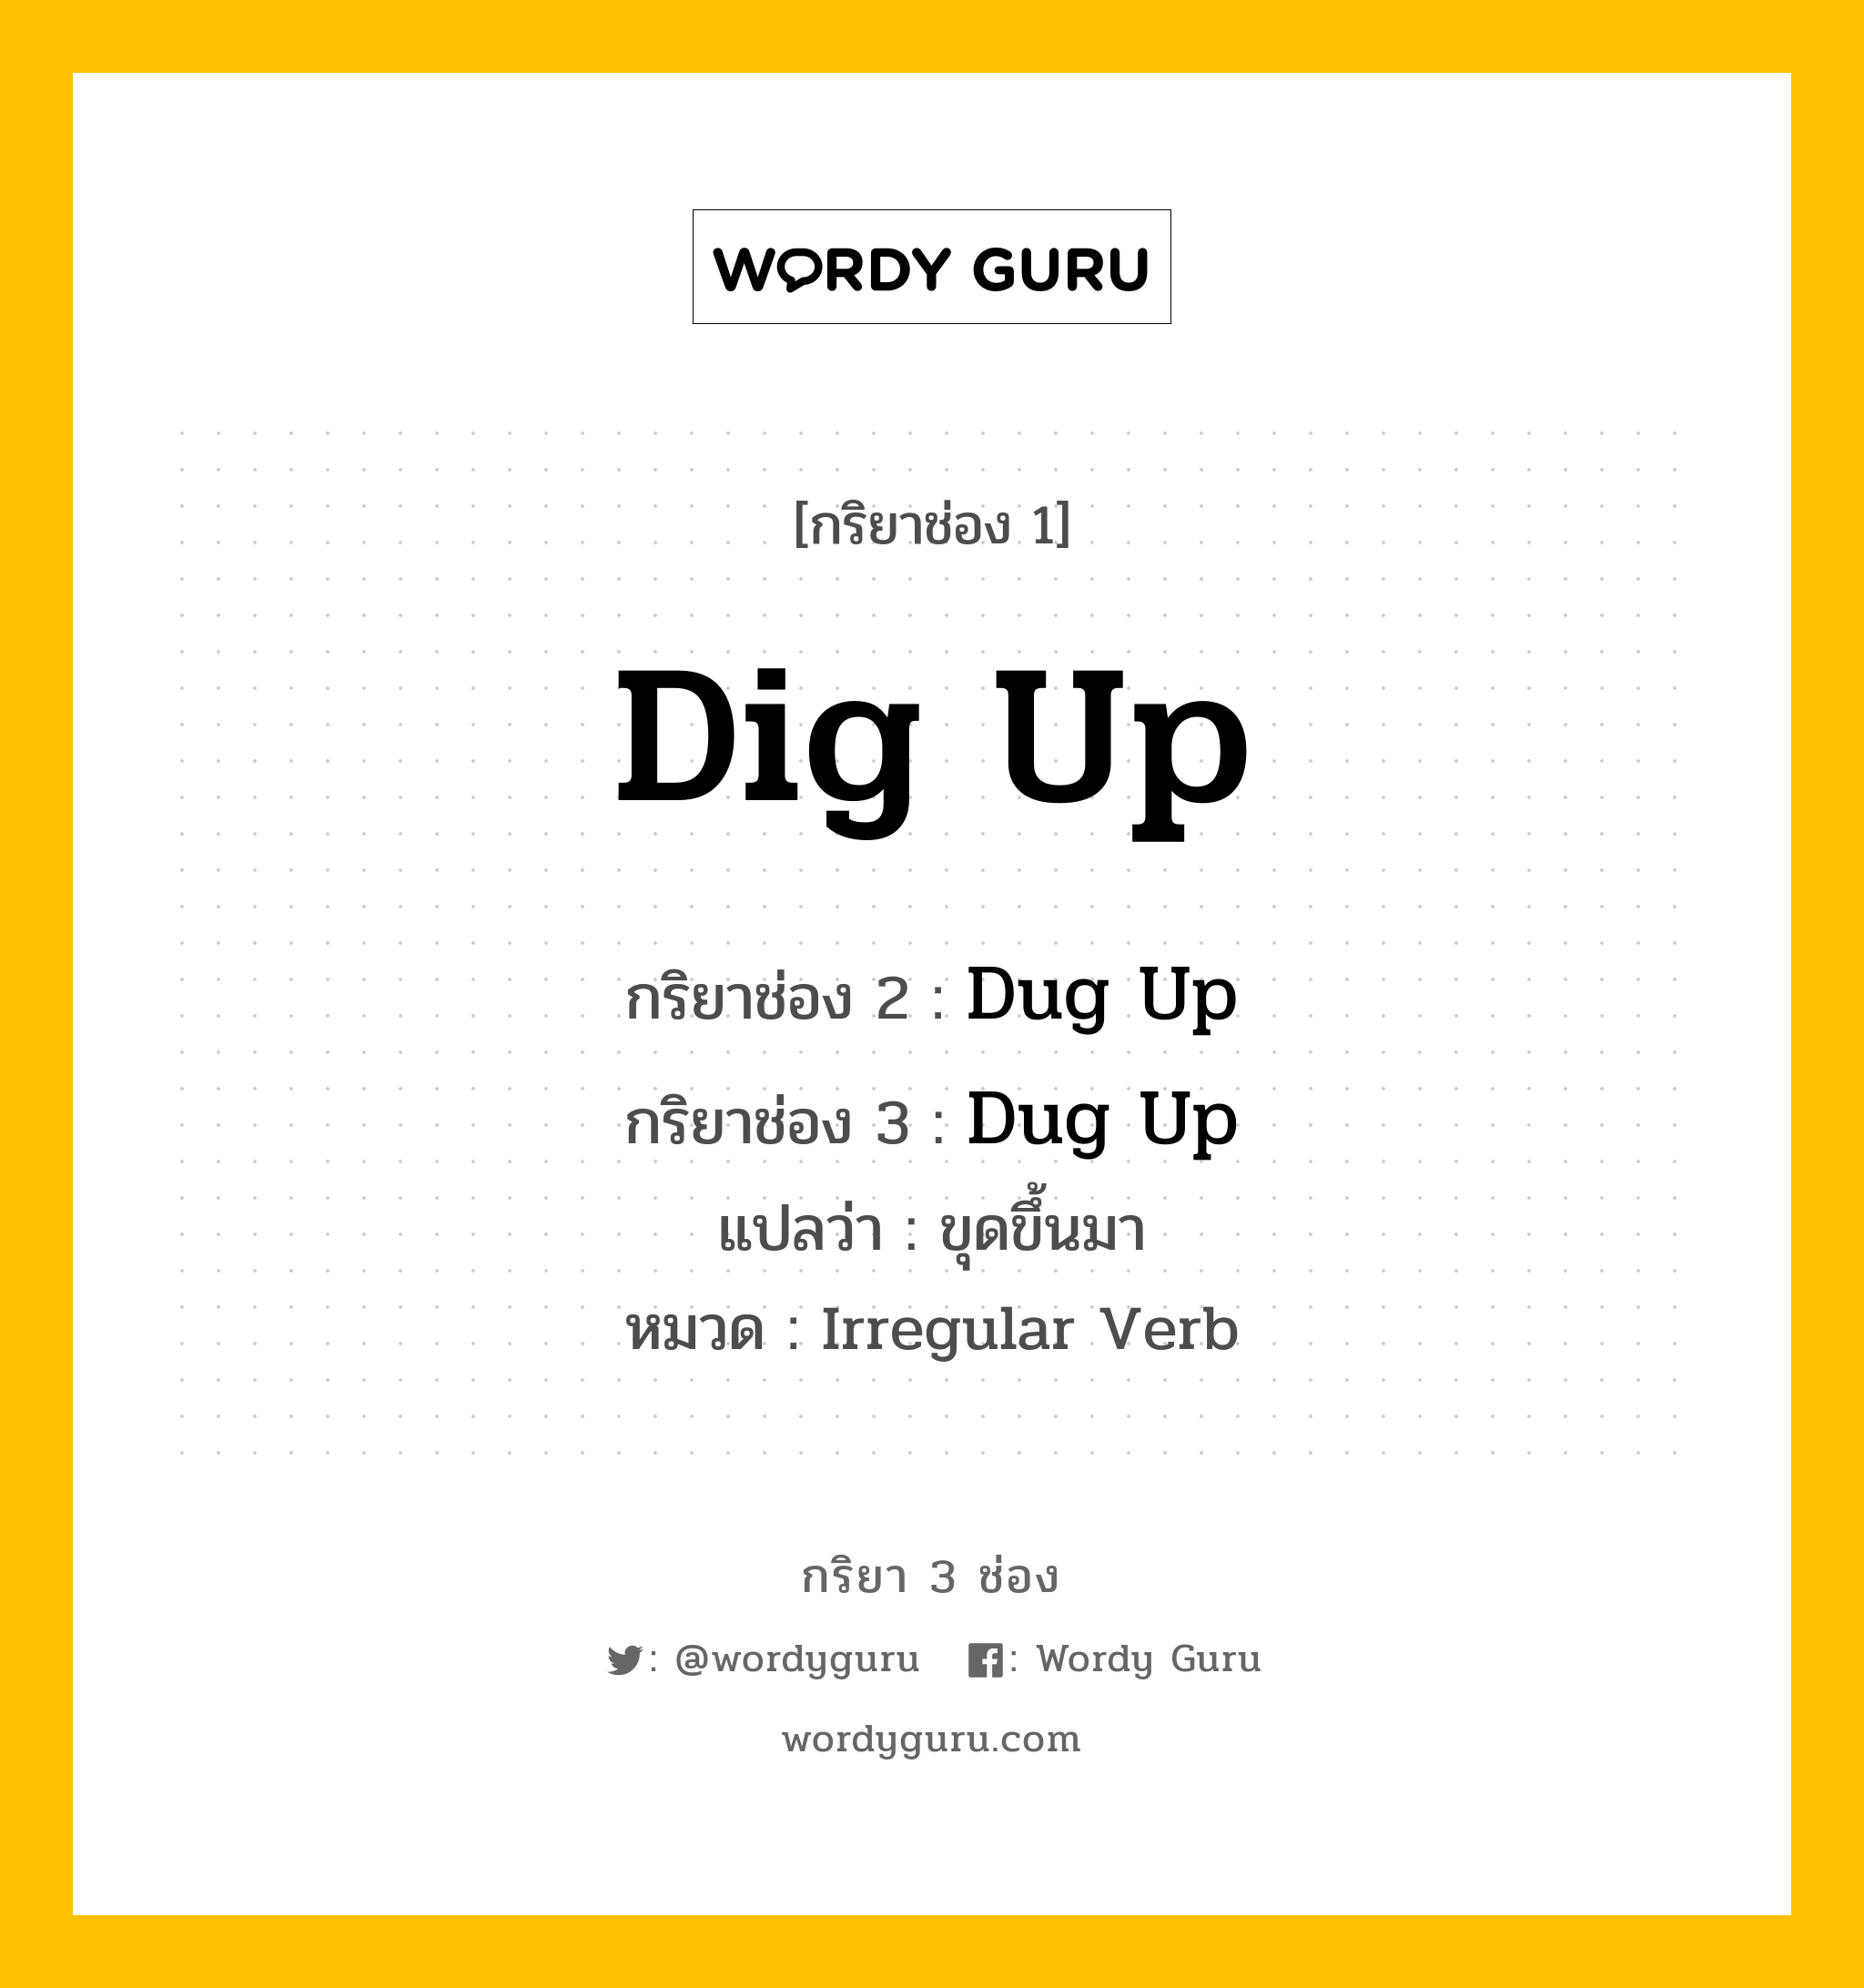 กริยา 3 ช่อง: Dig Up ช่อง 2 Dig Up ช่อง 3 คืออะไร, กริยาช่อง 1 Dig Up กริยาช่อง 2 Dug Up กริยาช่อง 3 Dug Up แปลว่า ขุดขึ้นมา หมวด Irregular Verb หมวด Irregular Verb